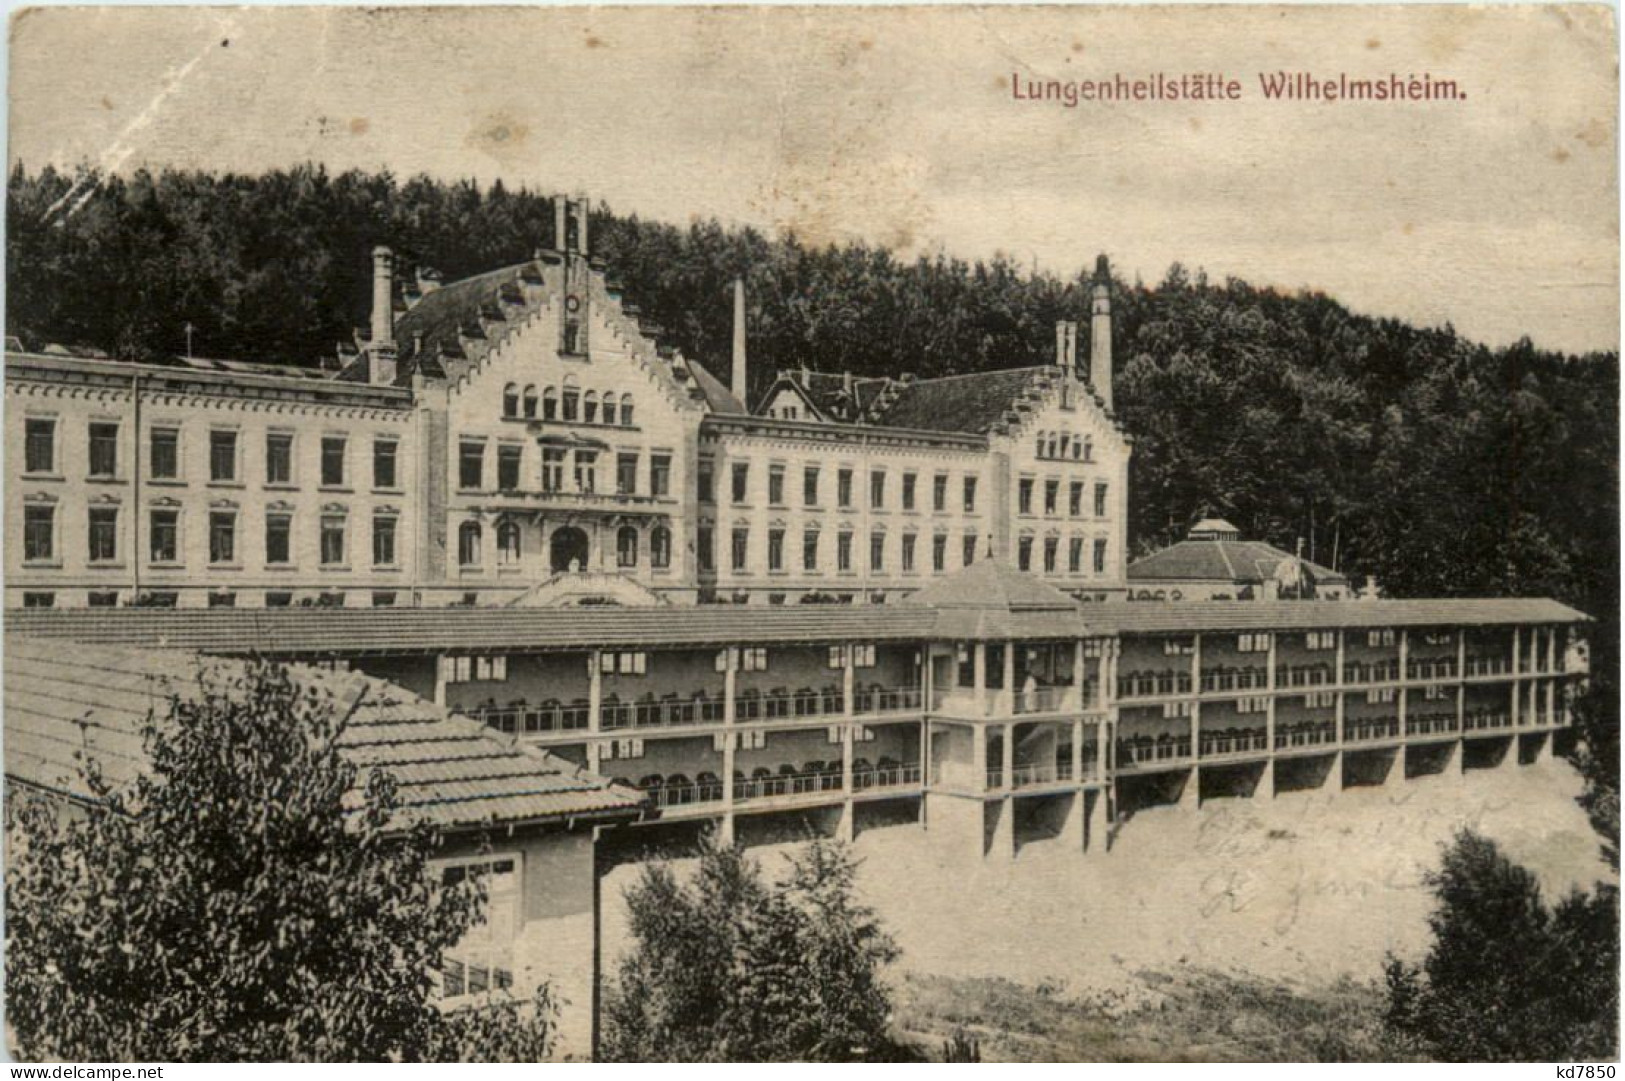 Wilhelmsheim, Lungenheilstätte - Waiblingen